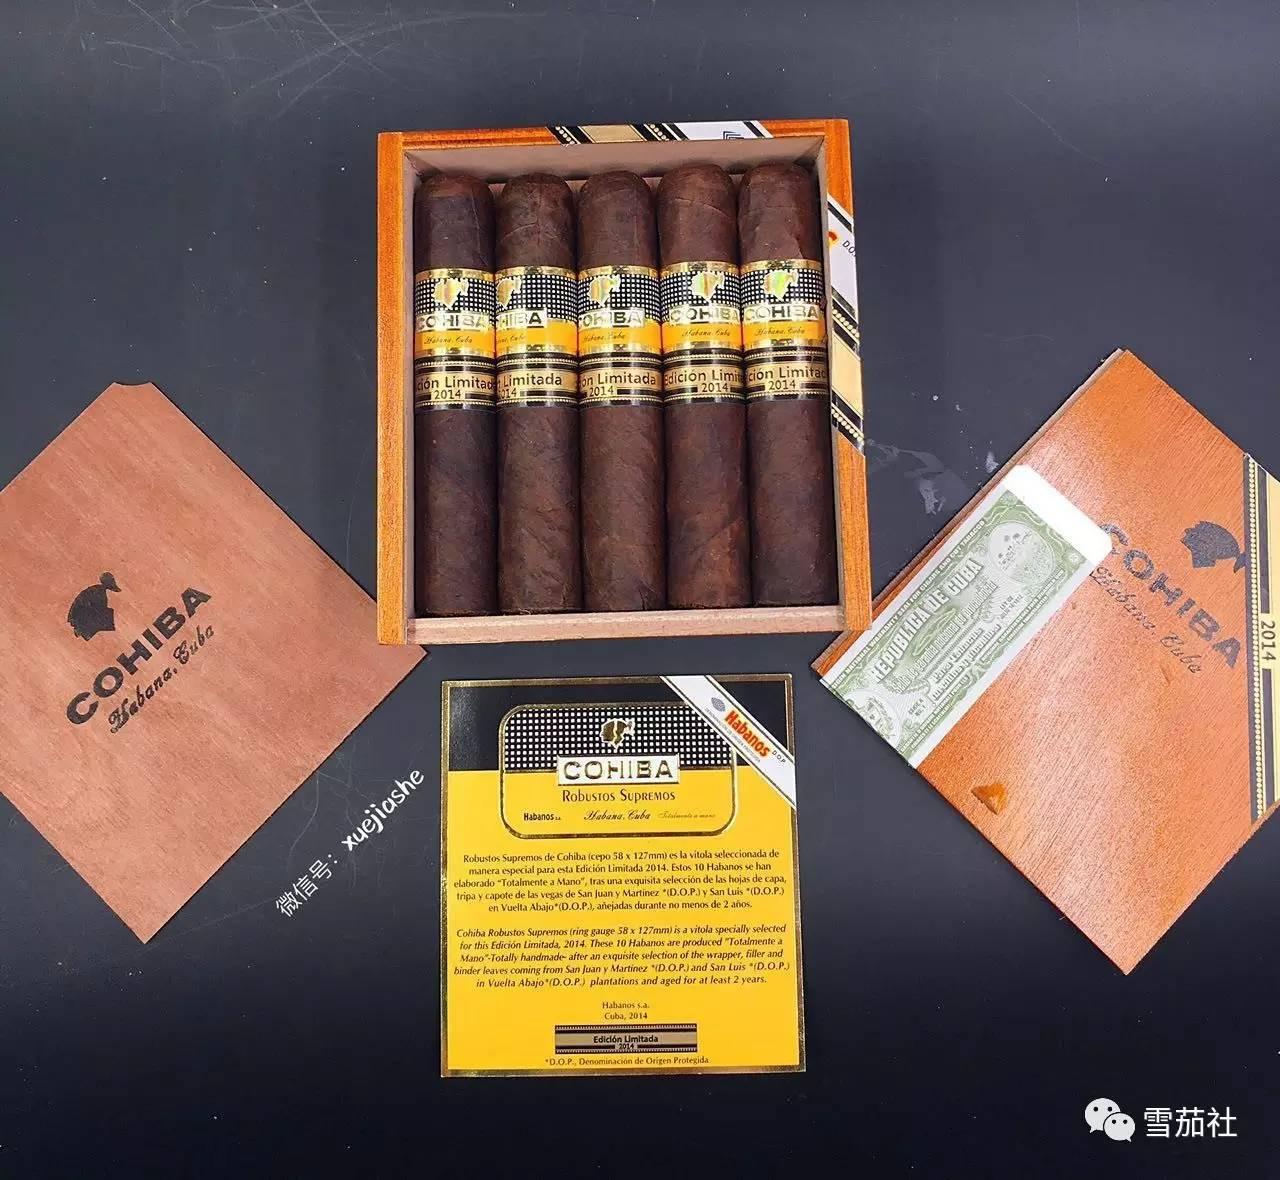 一箱古巴高希霸雪茄拍出2779万元天价